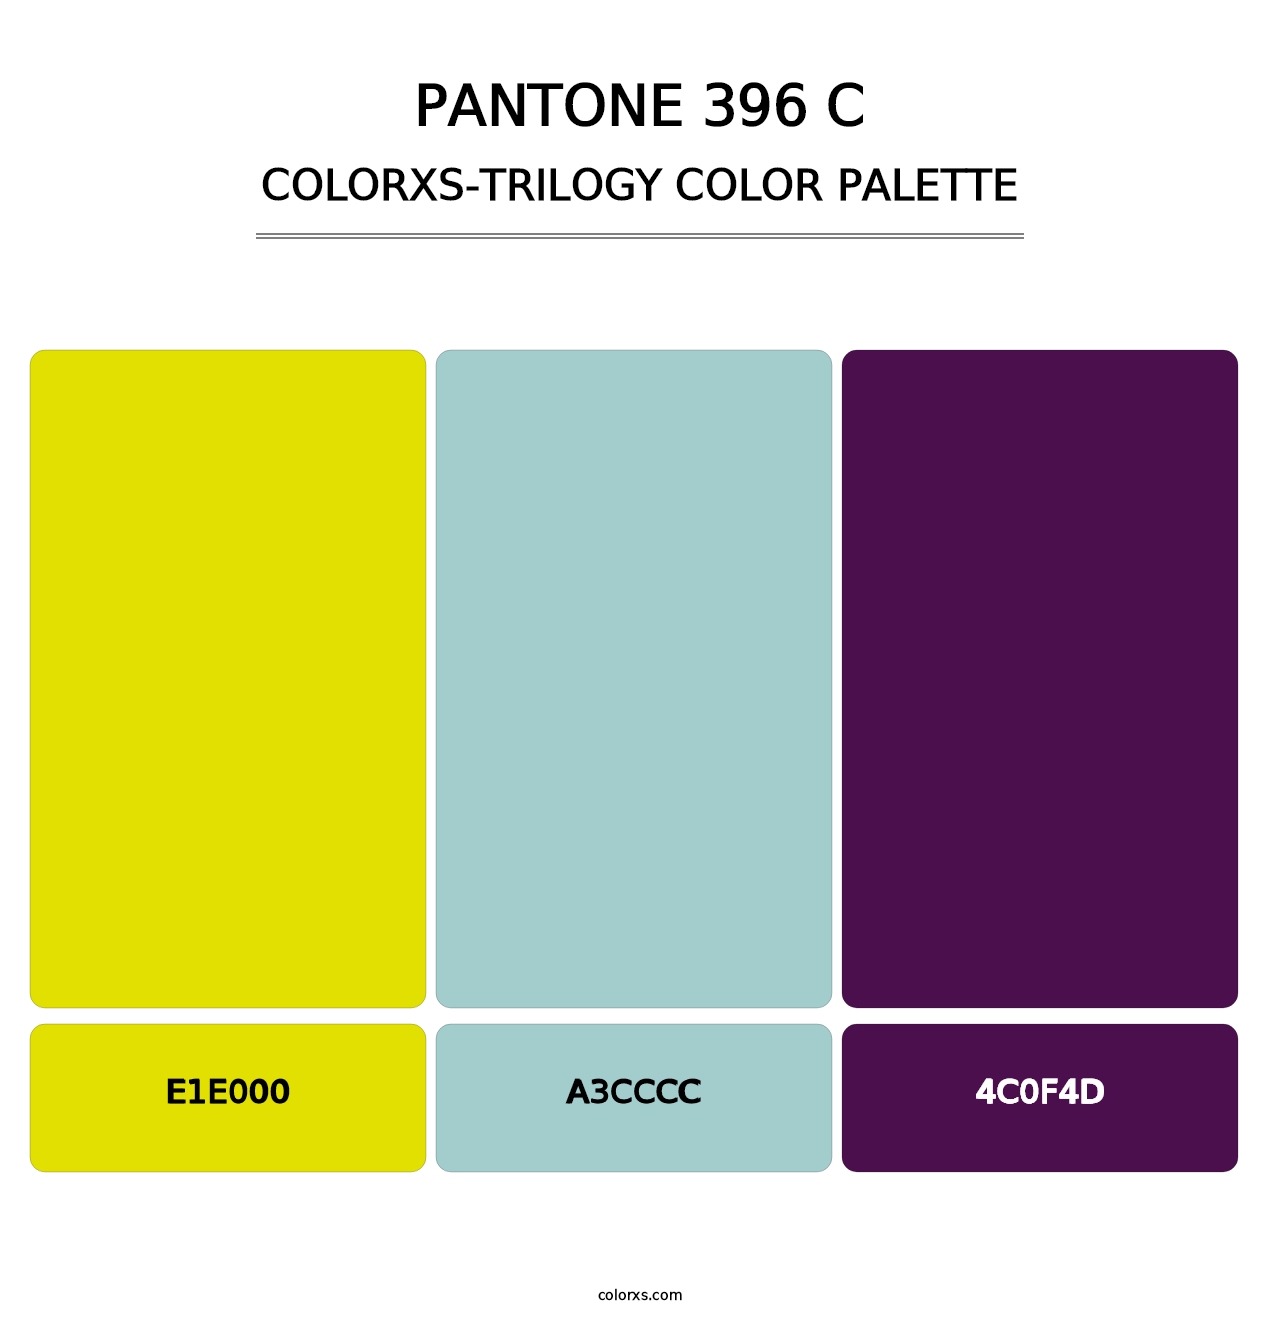 PANTONE 396 C - Colorxs Trilogy Palette